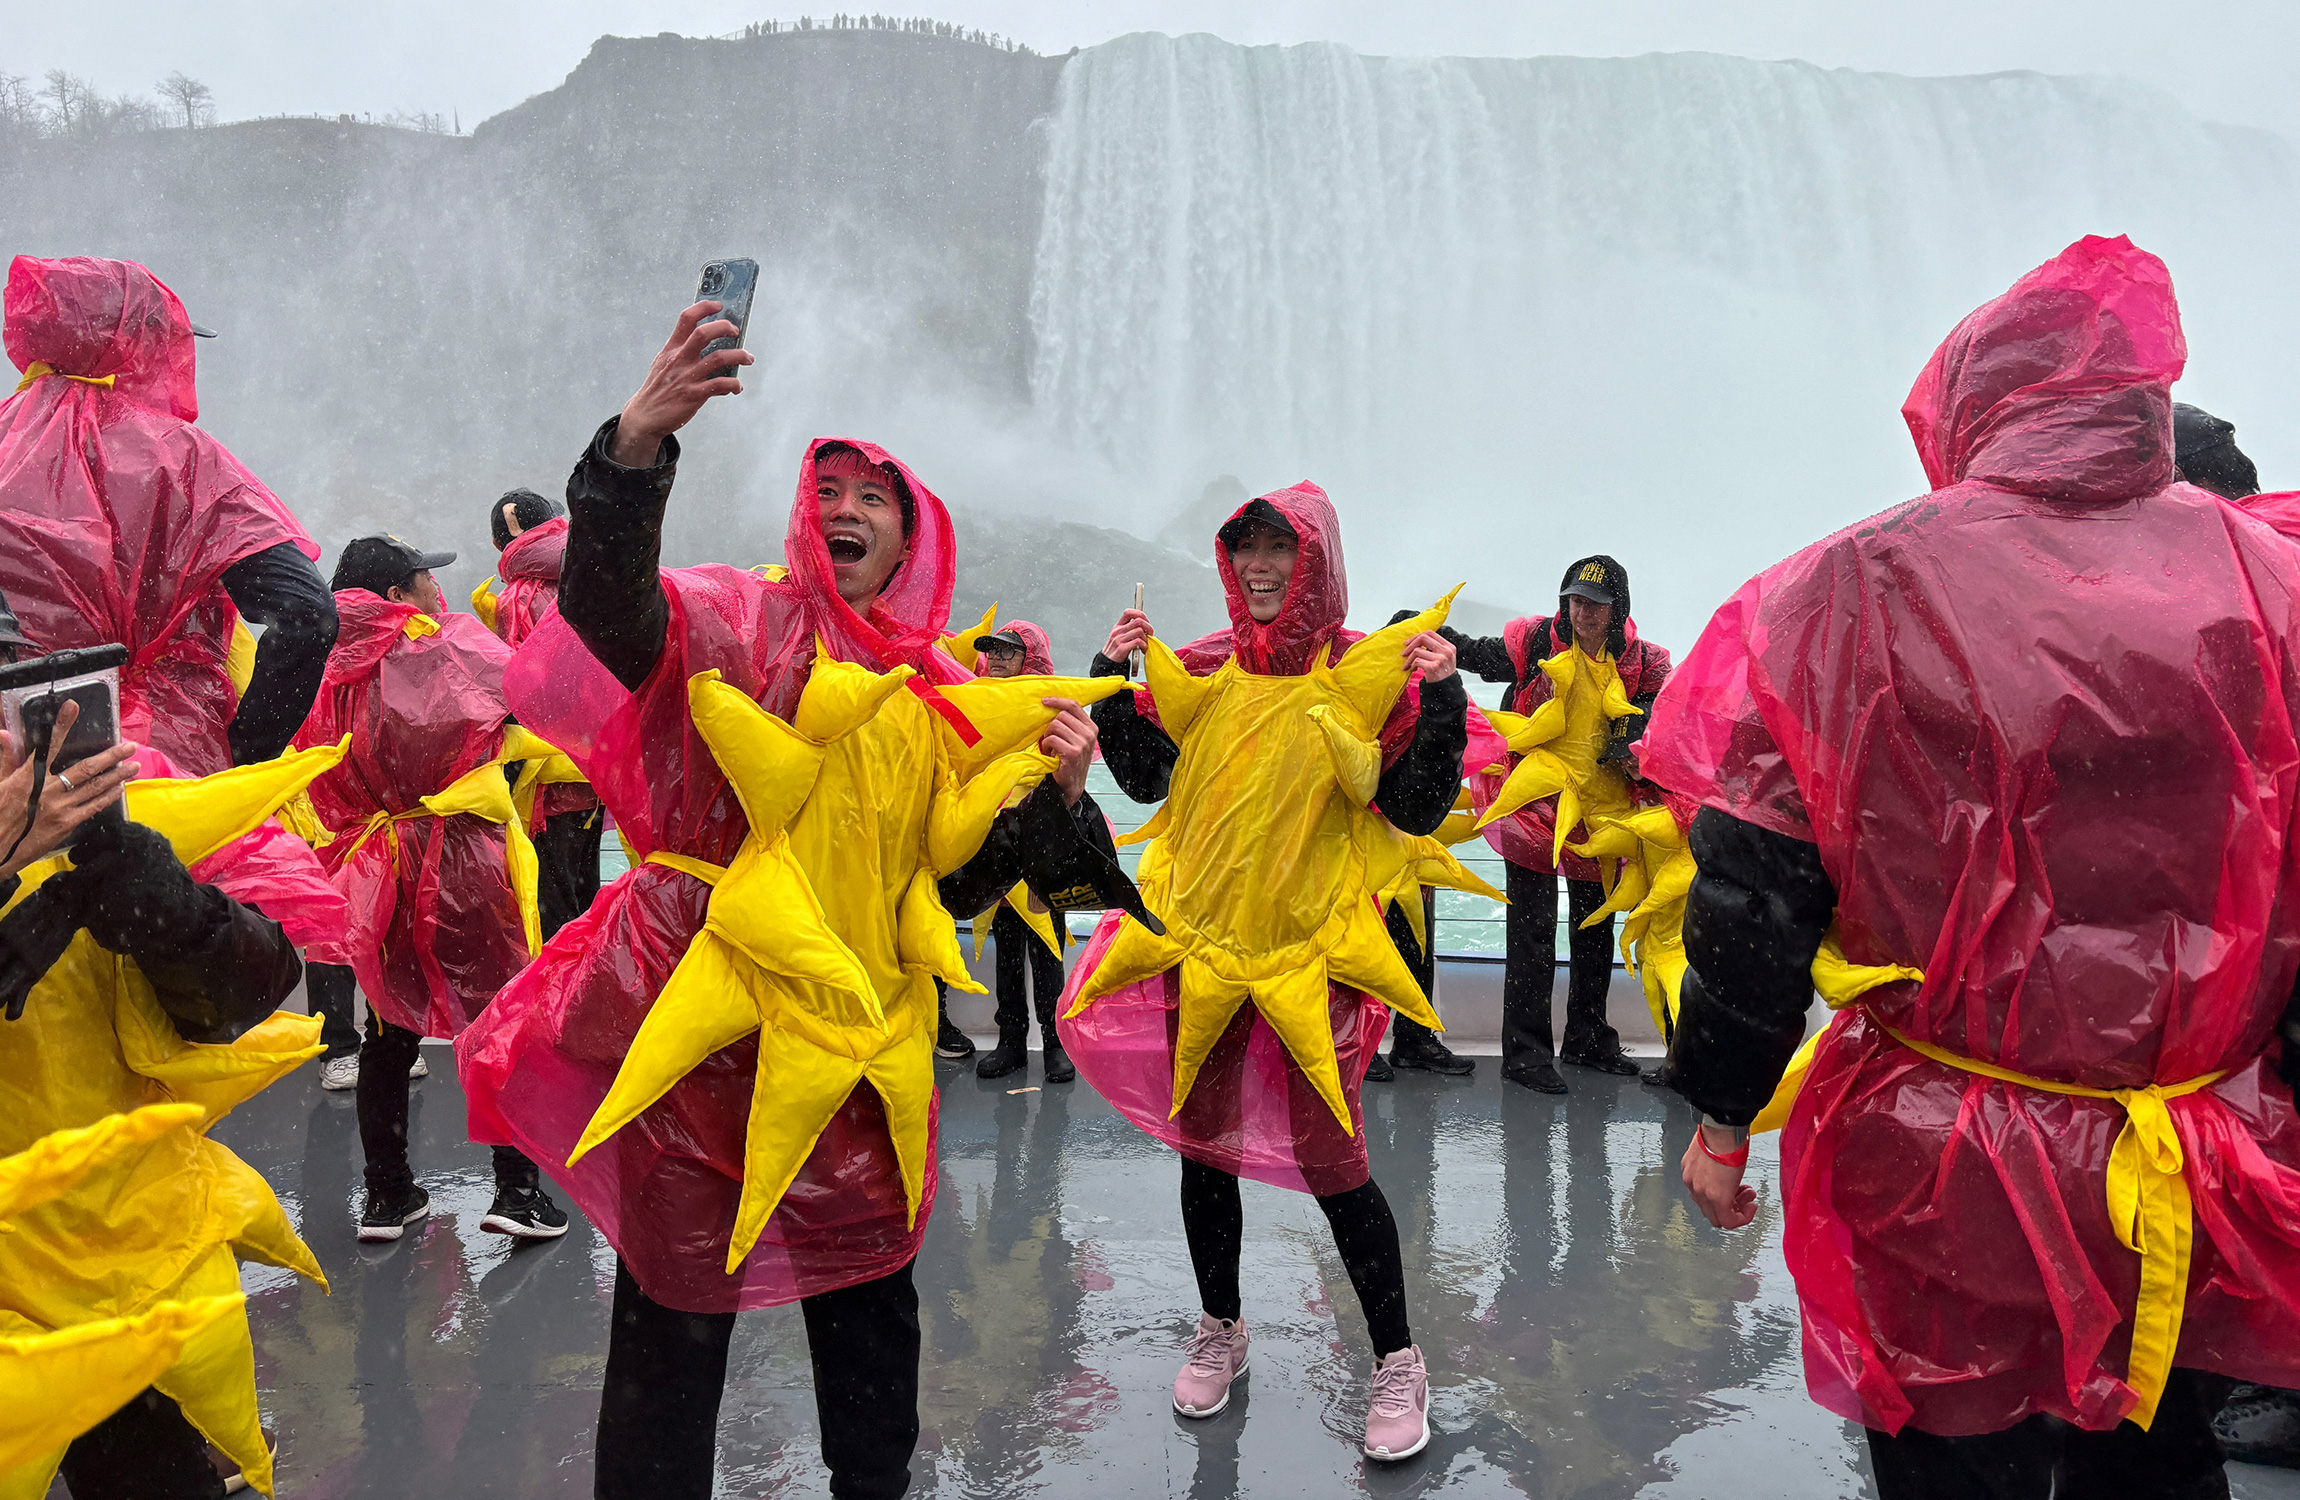 Увидеть затмение удалось и жителям Канады. На этом фото&nbsp;&mdash; группа канадцев, которые собрались, чтобы побить мировой рекорд Гиннеса как самая большая группа людей, одетых в костюм солнца.